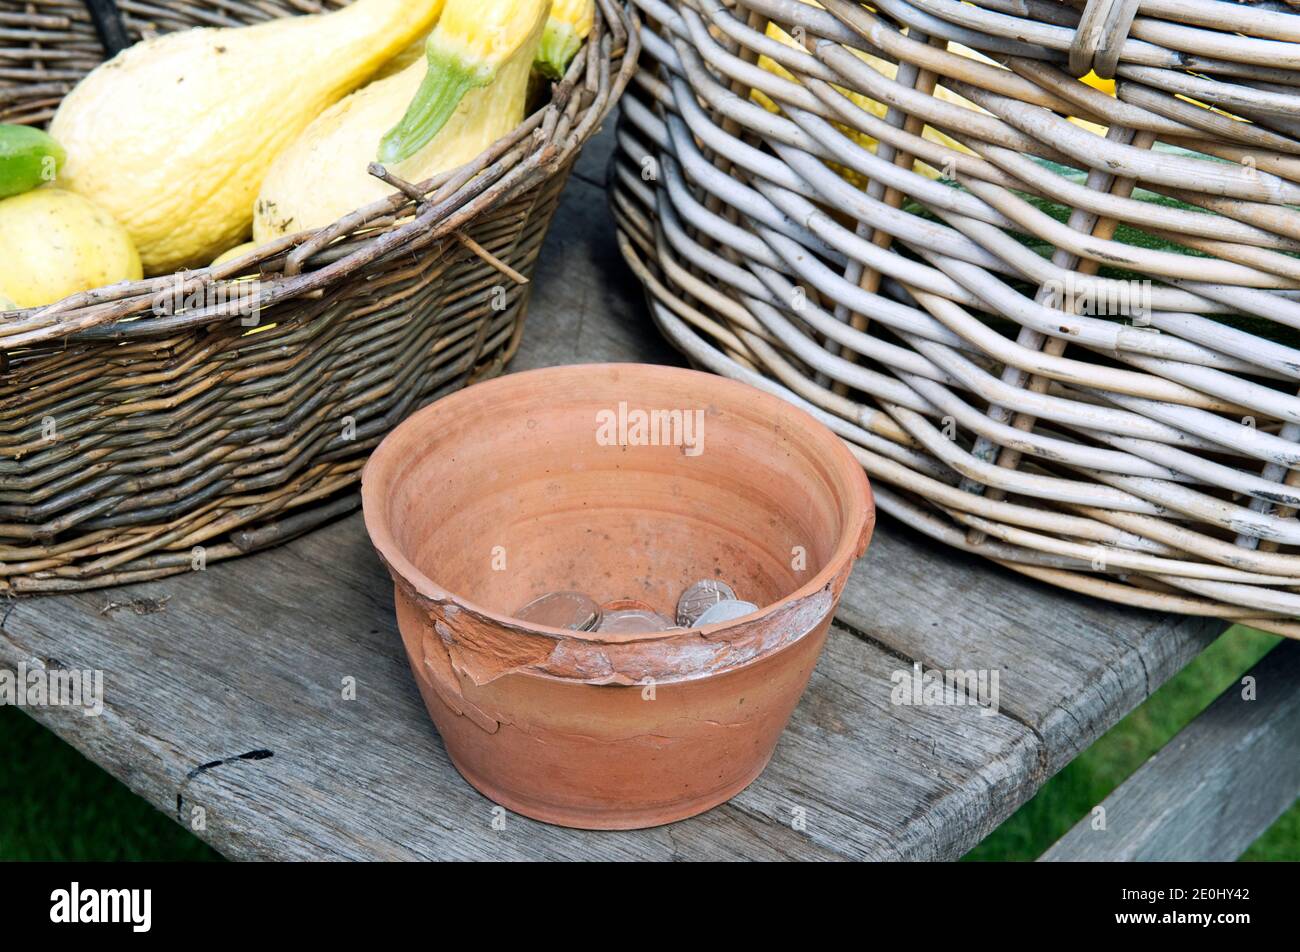 Pot de fleurs en terre cuite avec recettes à l'intérieur de l'argent de la vente de légumes entre deux paniers en osier Banque D'Images